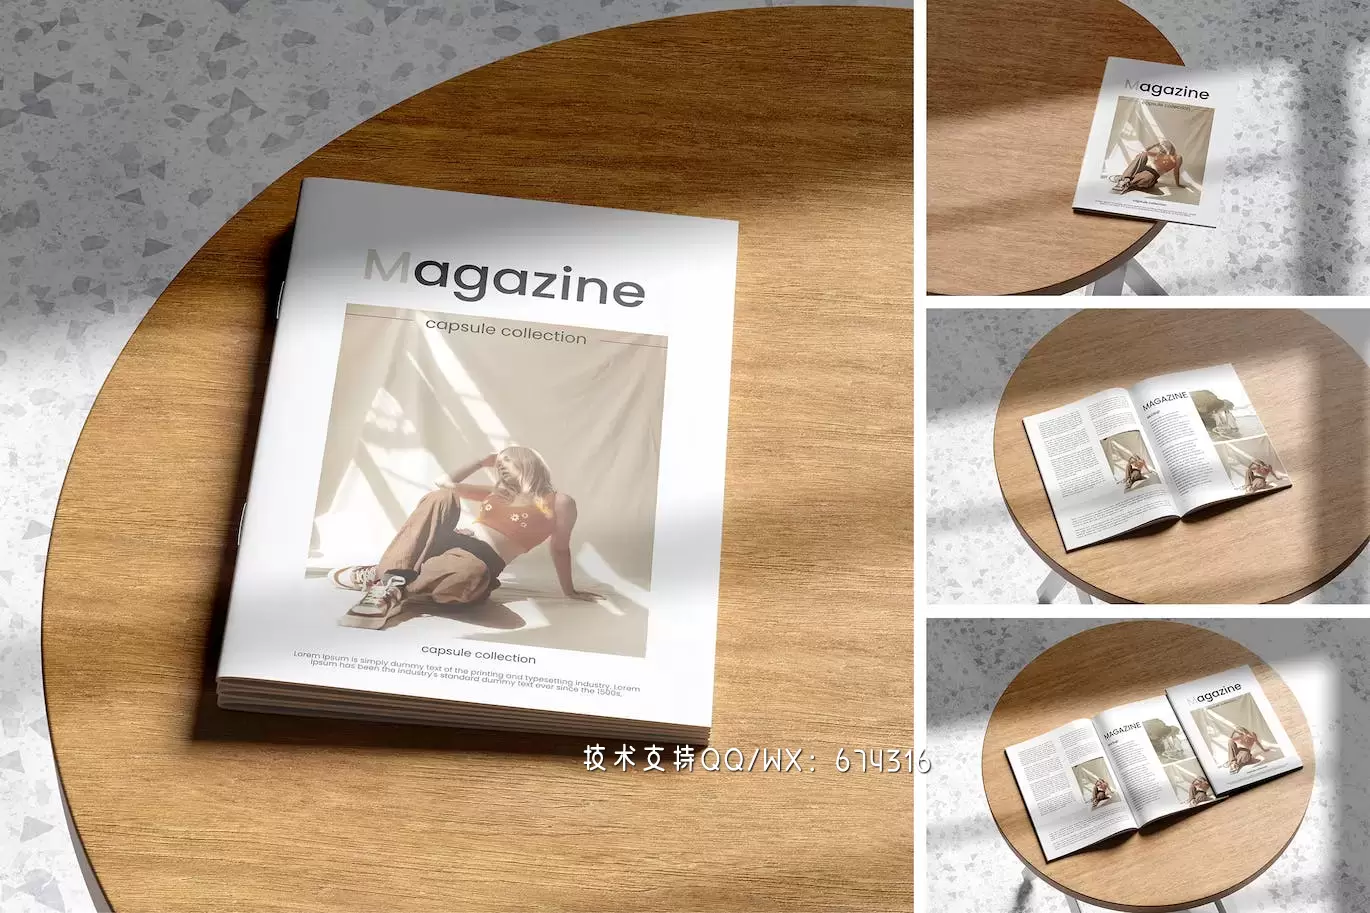 🔴时尚高端专业的高品质杂志宣传册画册设计模板书籍装帧VI设计样机展示模型mockups免费下载